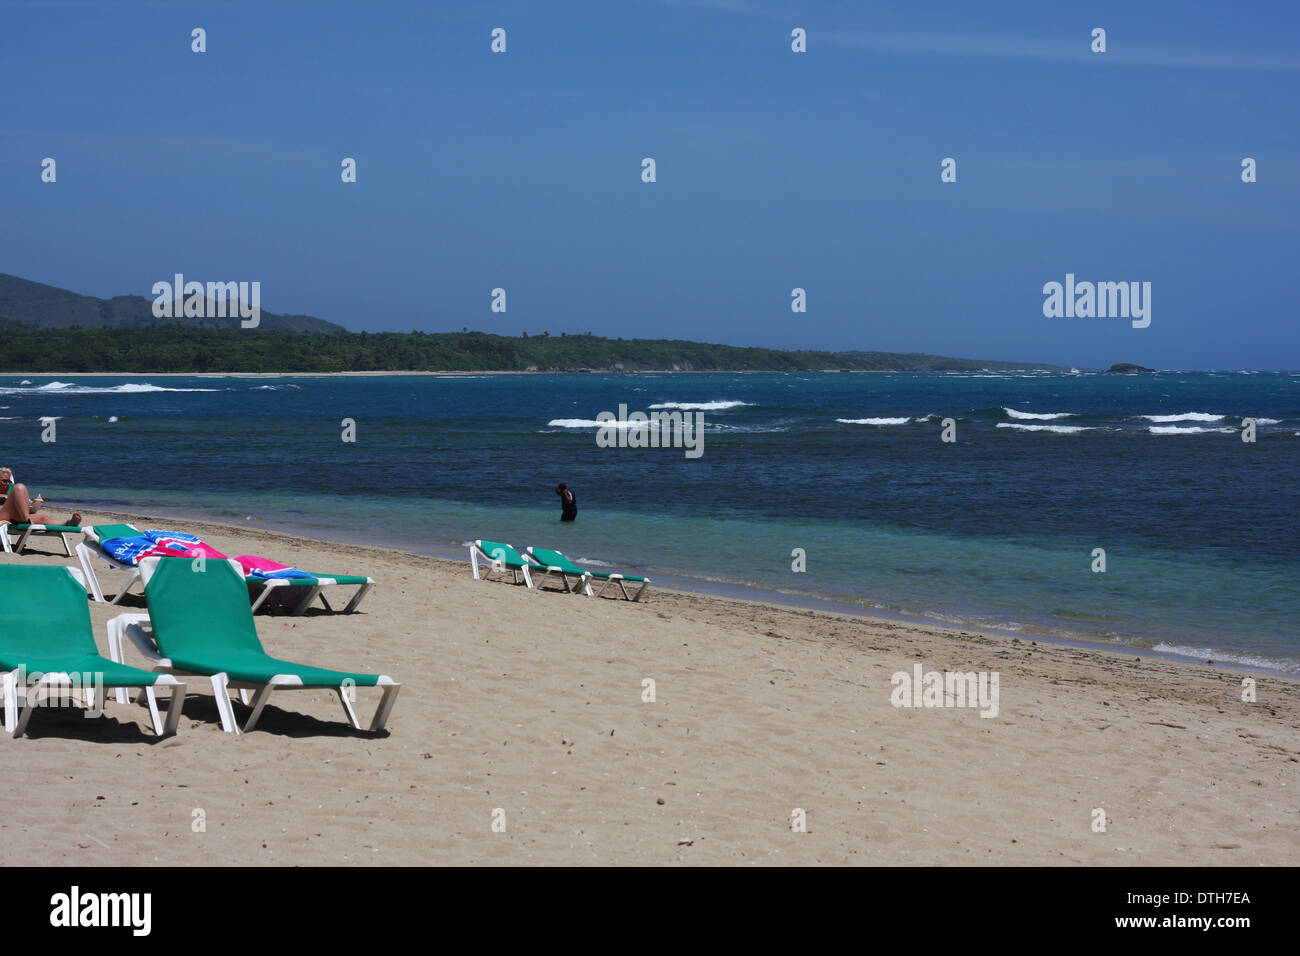 Beach Landscape in the Dominican Republic Stock Photo